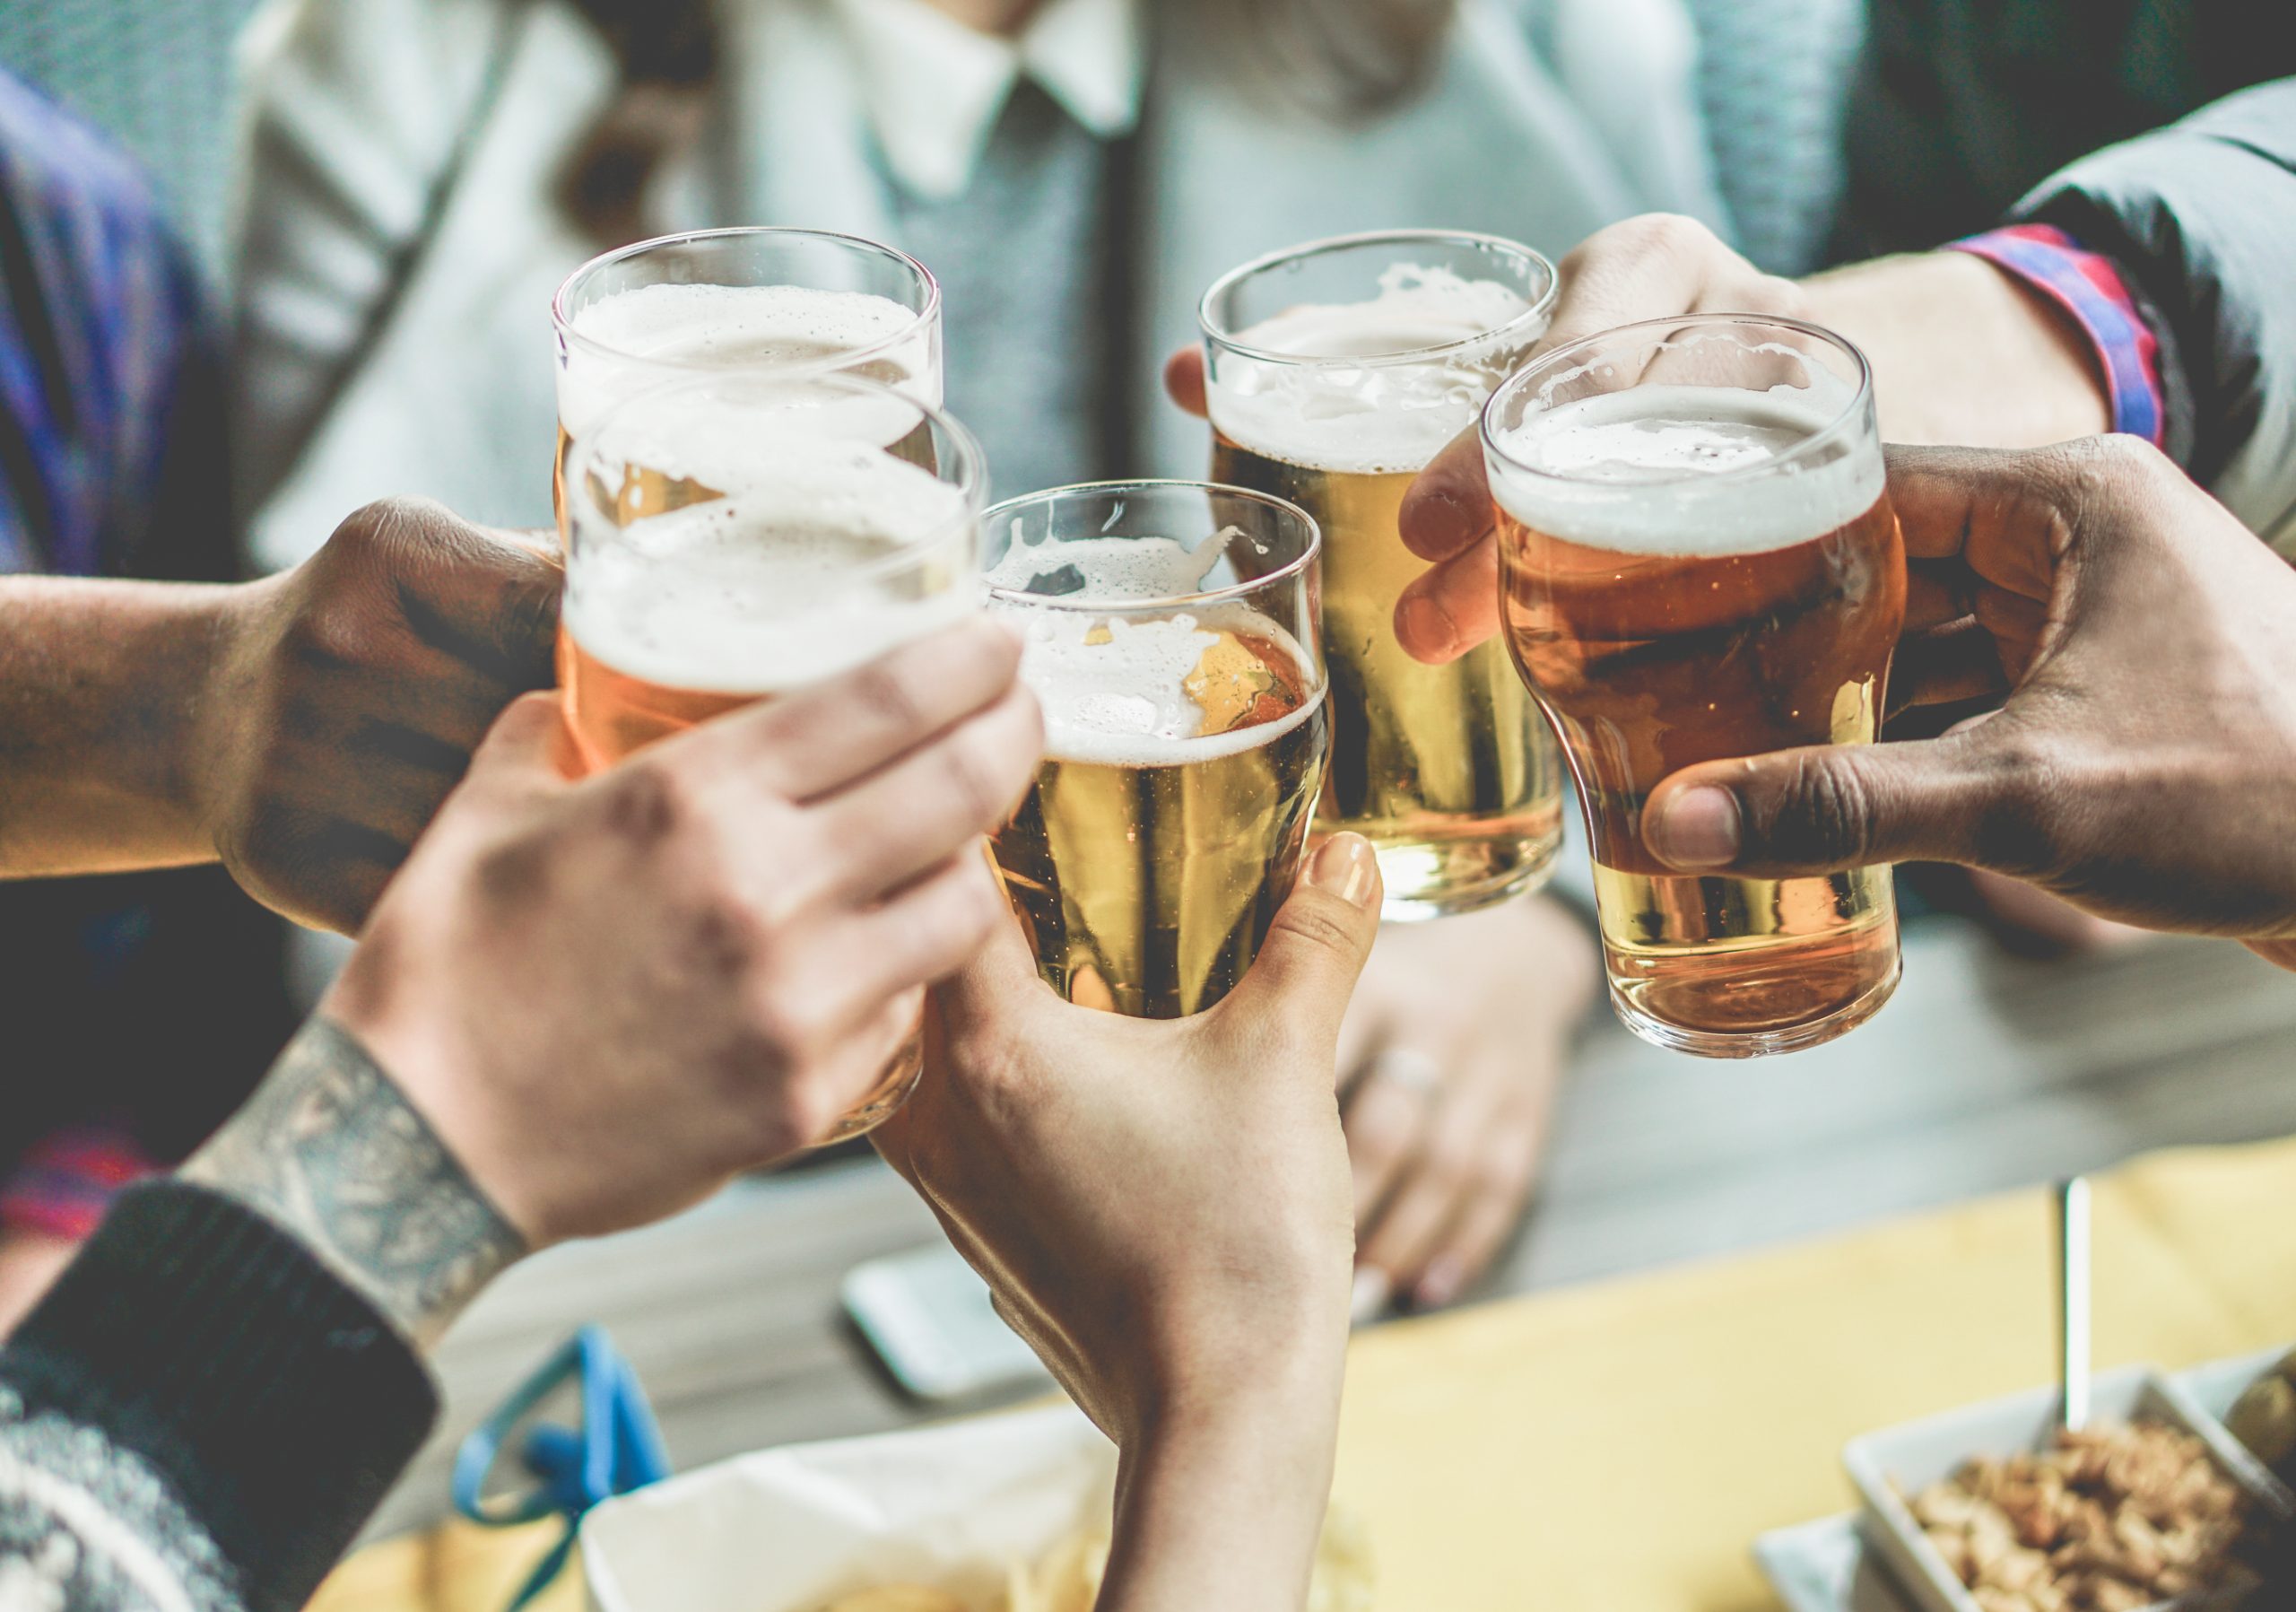 Cervejeira ou Frigobar, qual é a melhor opção para a sua bebida?